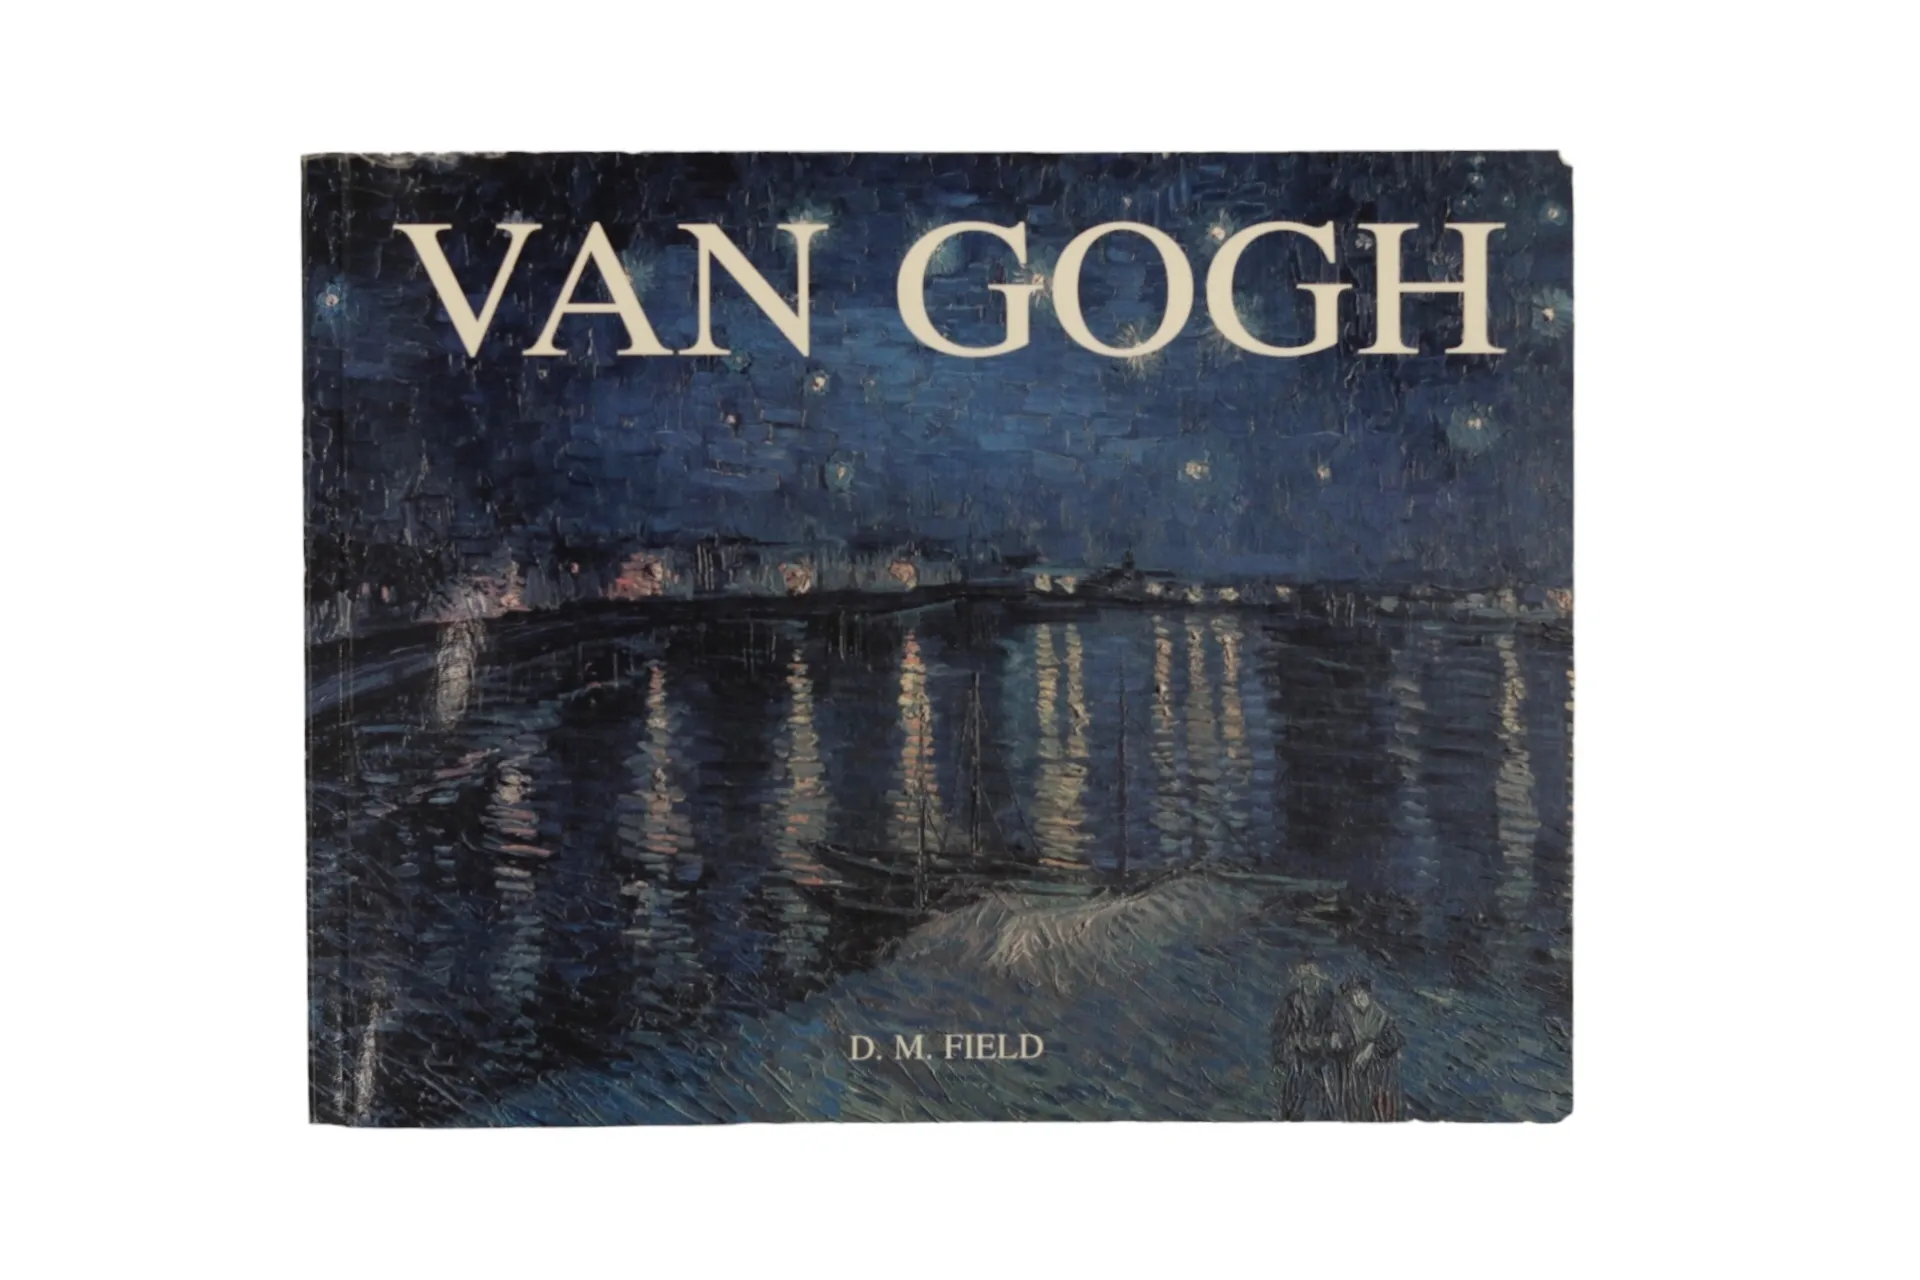 Van Gogh by D. M. Field